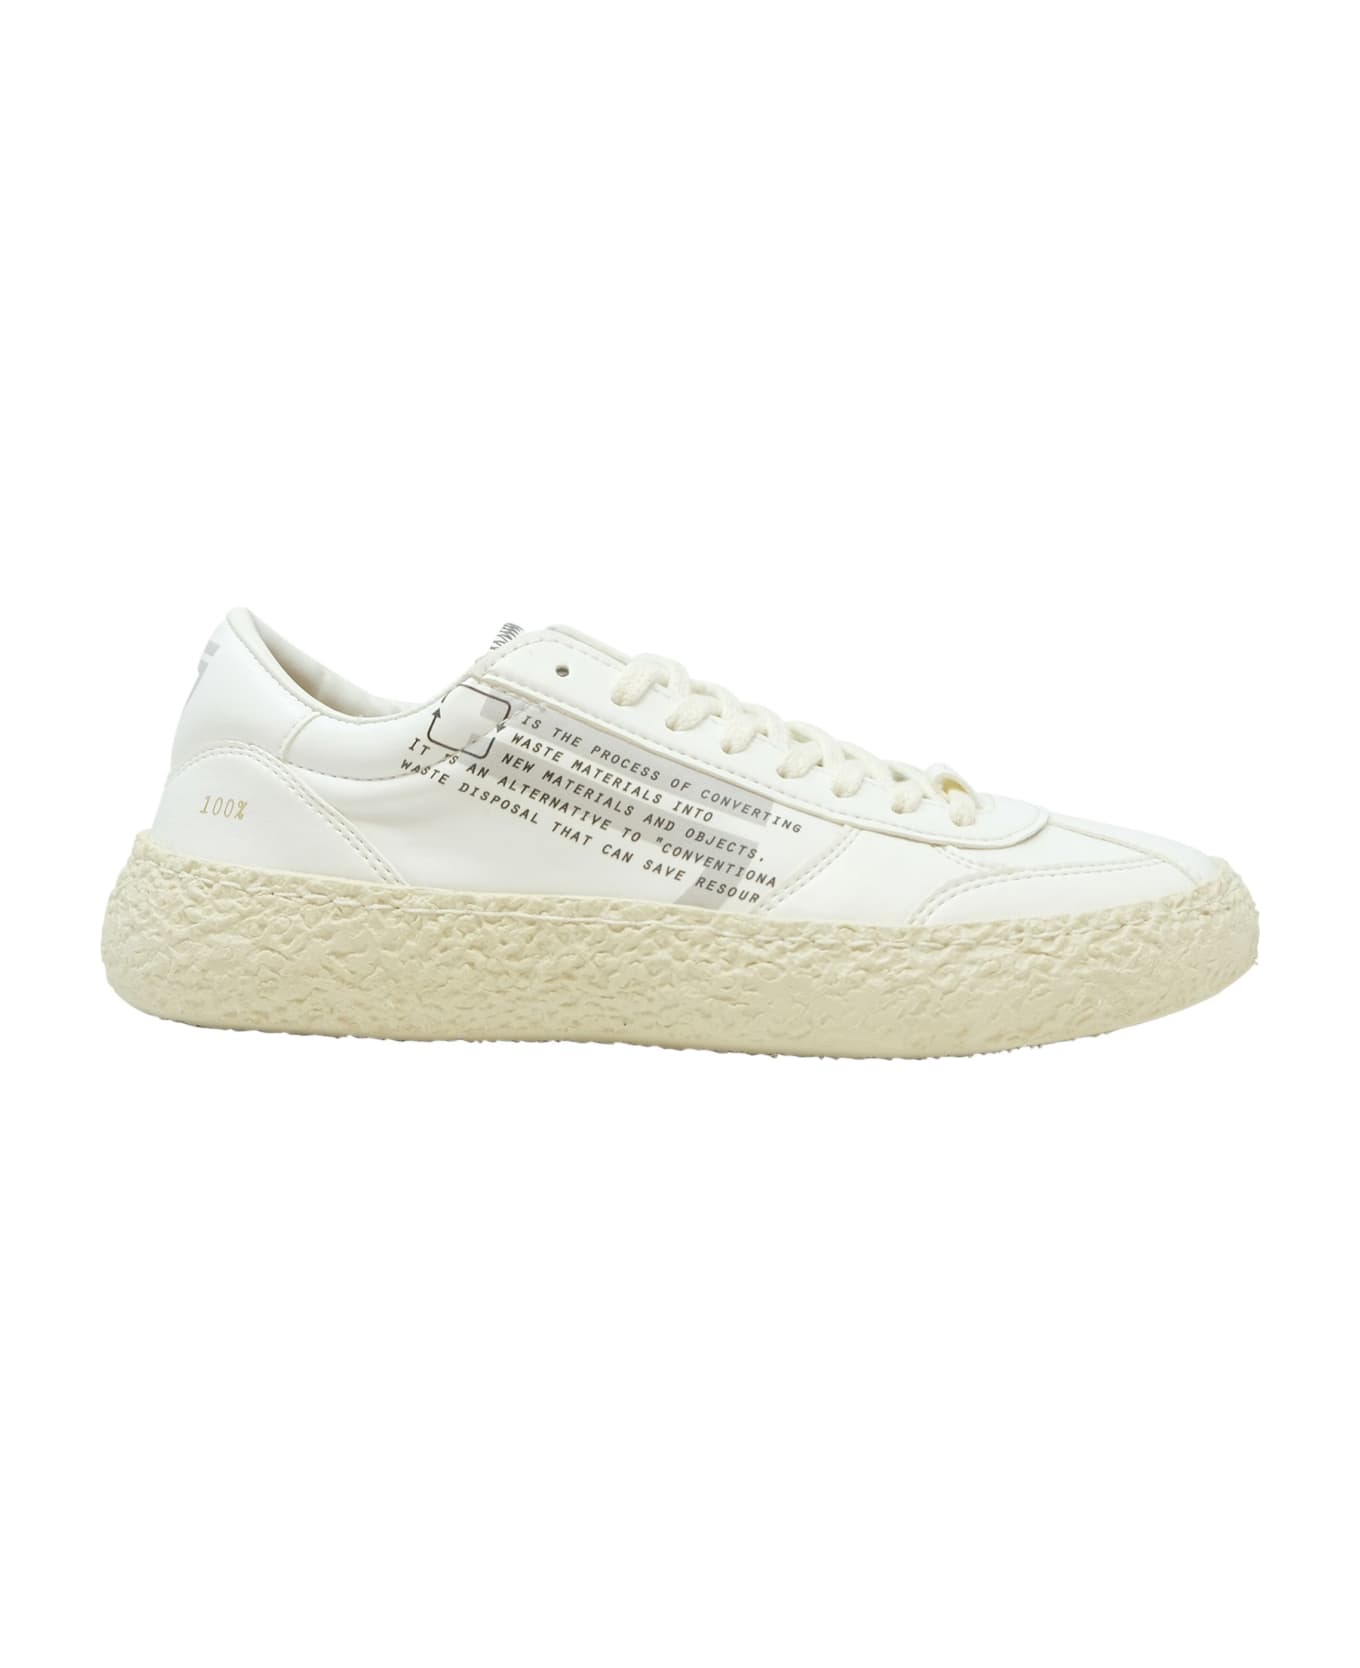 Puraai Leather Sneakers - WHITE